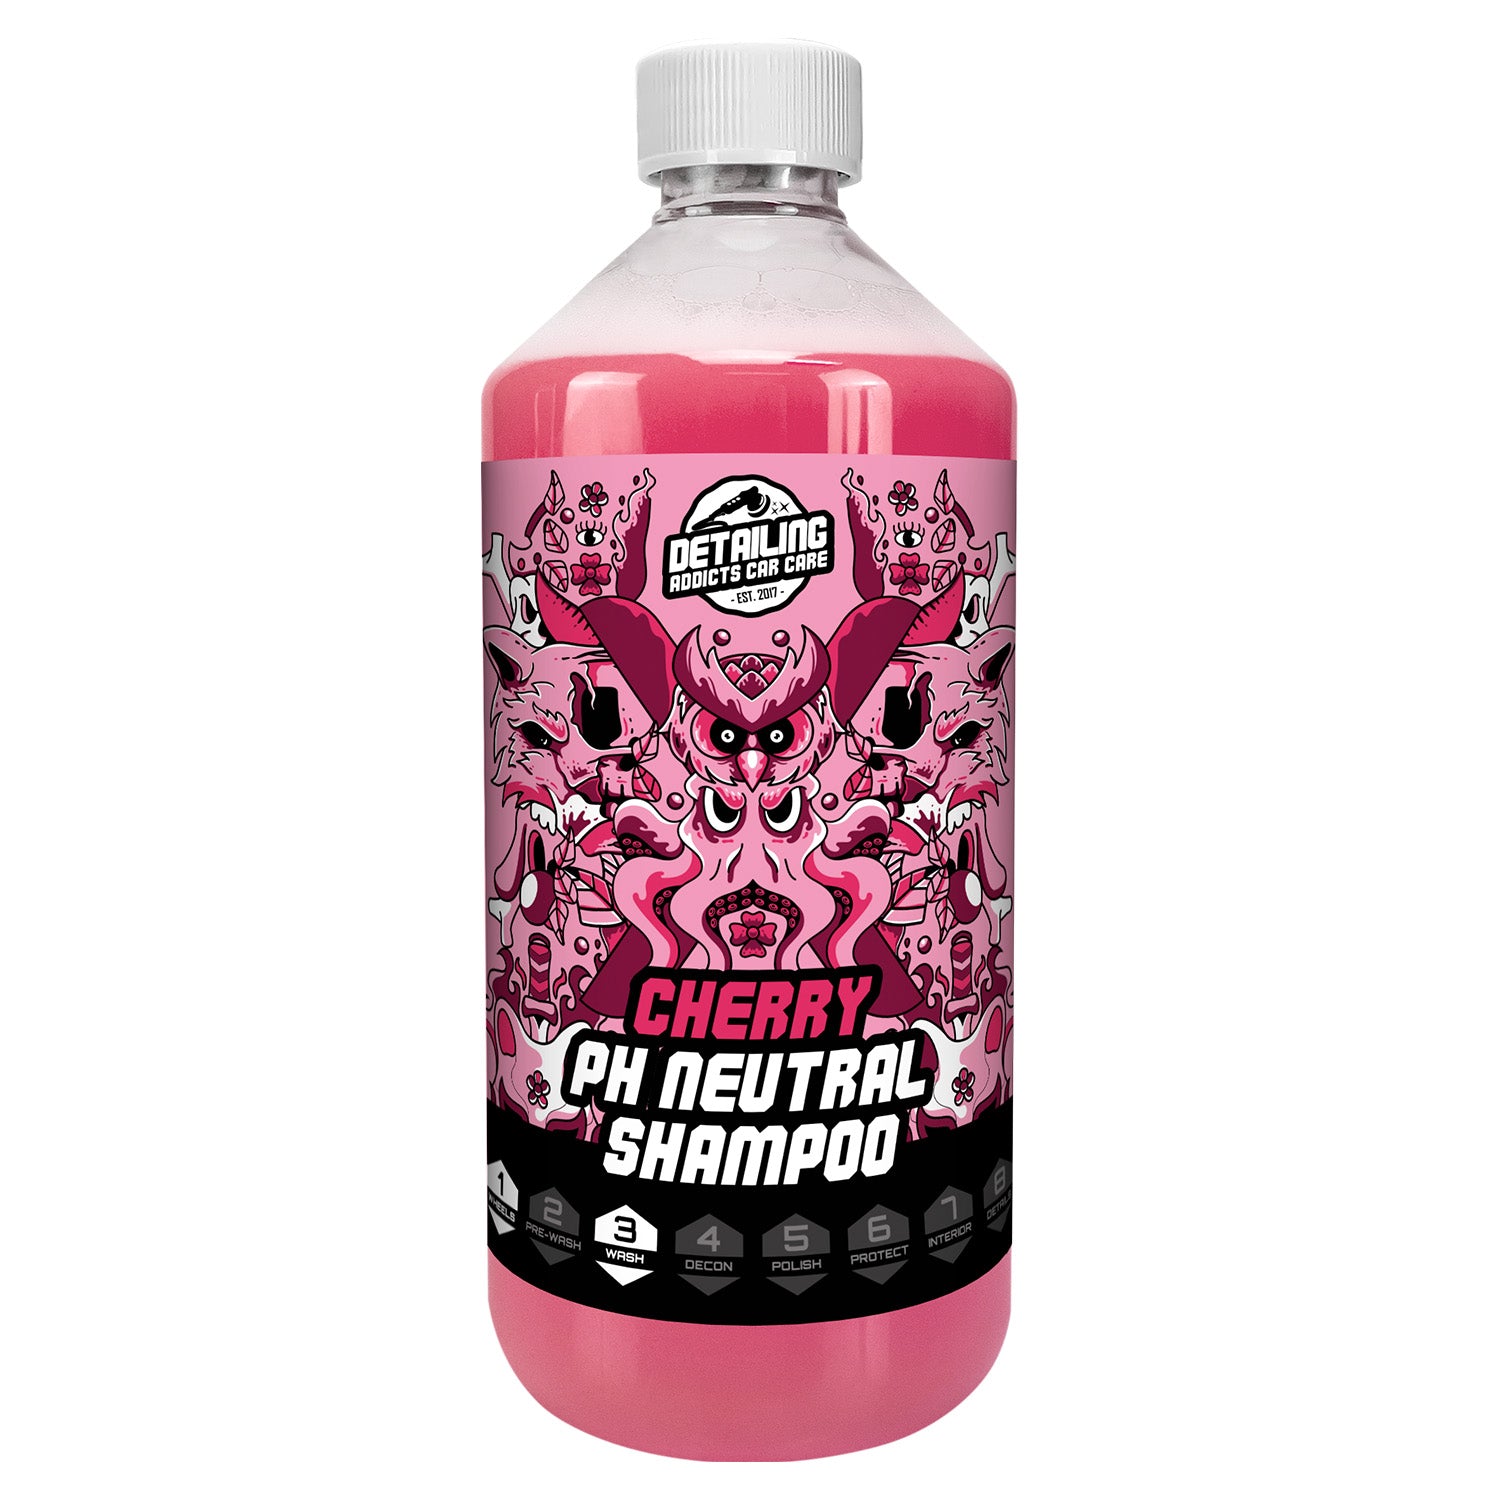 Cherry PH Neutral Car Shampoo 500ml - Detailing Addicts